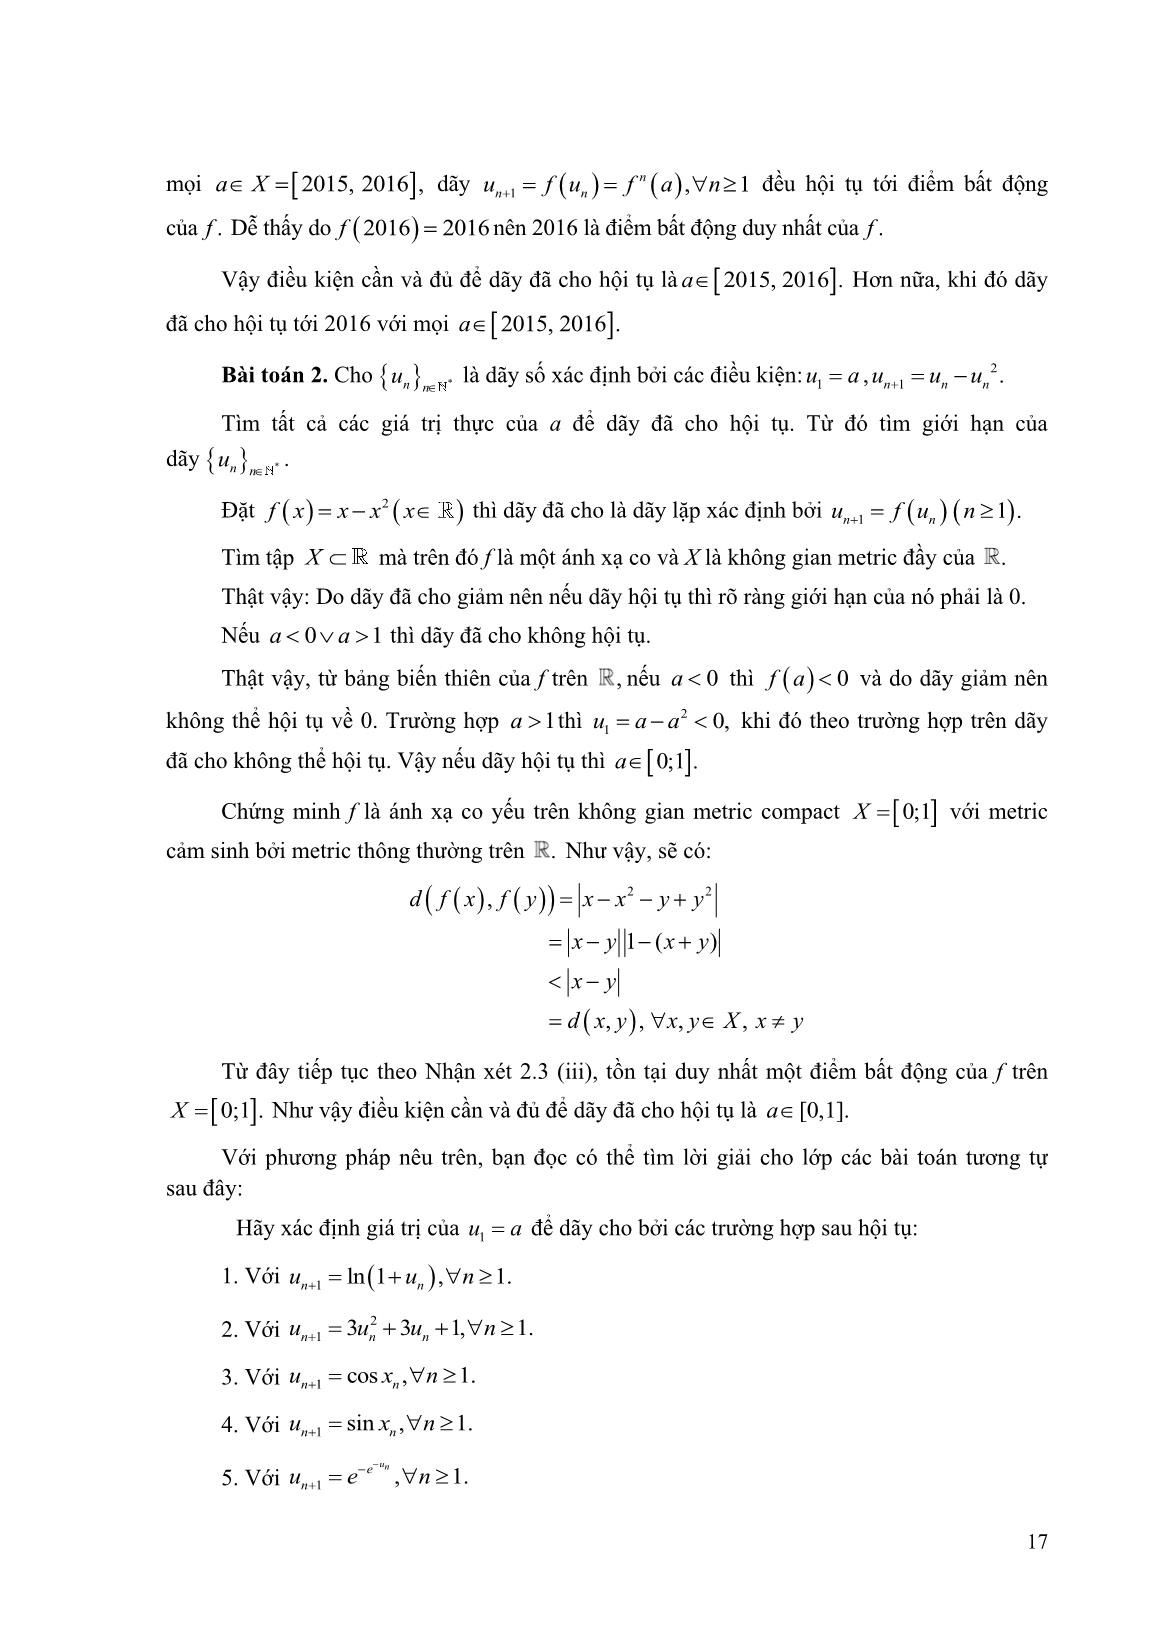 Một số ứng dụng của nguyên lý ánh xạ co trong không gian Metric trang 4